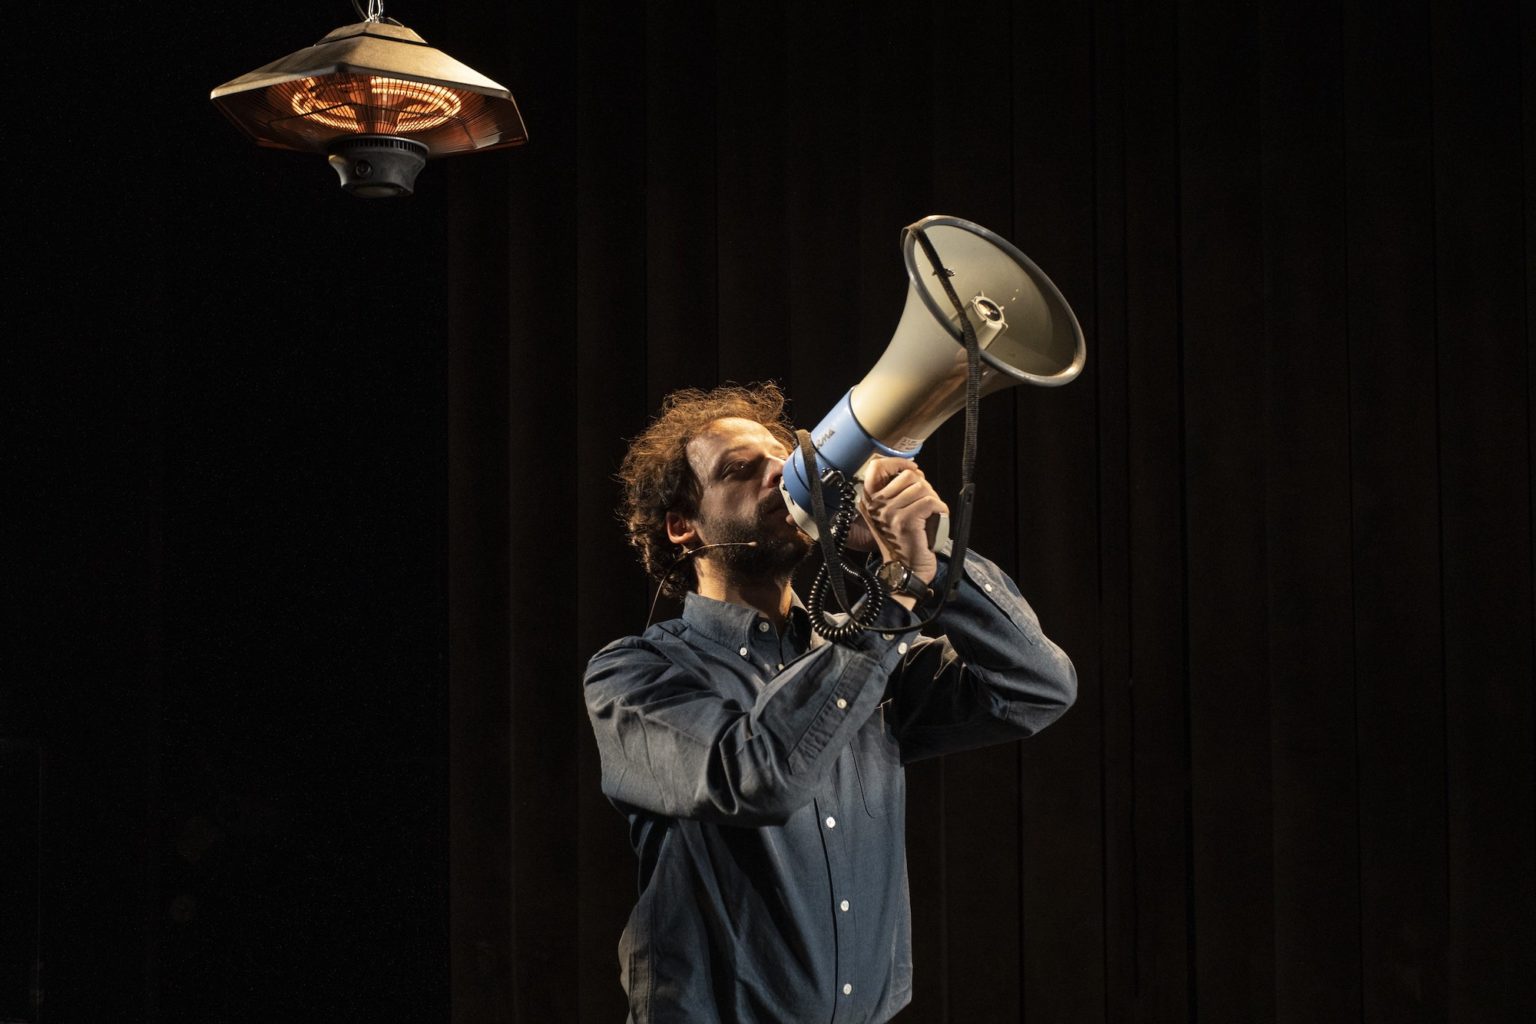 Photo du spectacle Il Capitale de Kepler-452 où l'on voit un acteur avec un mégaphone en mains